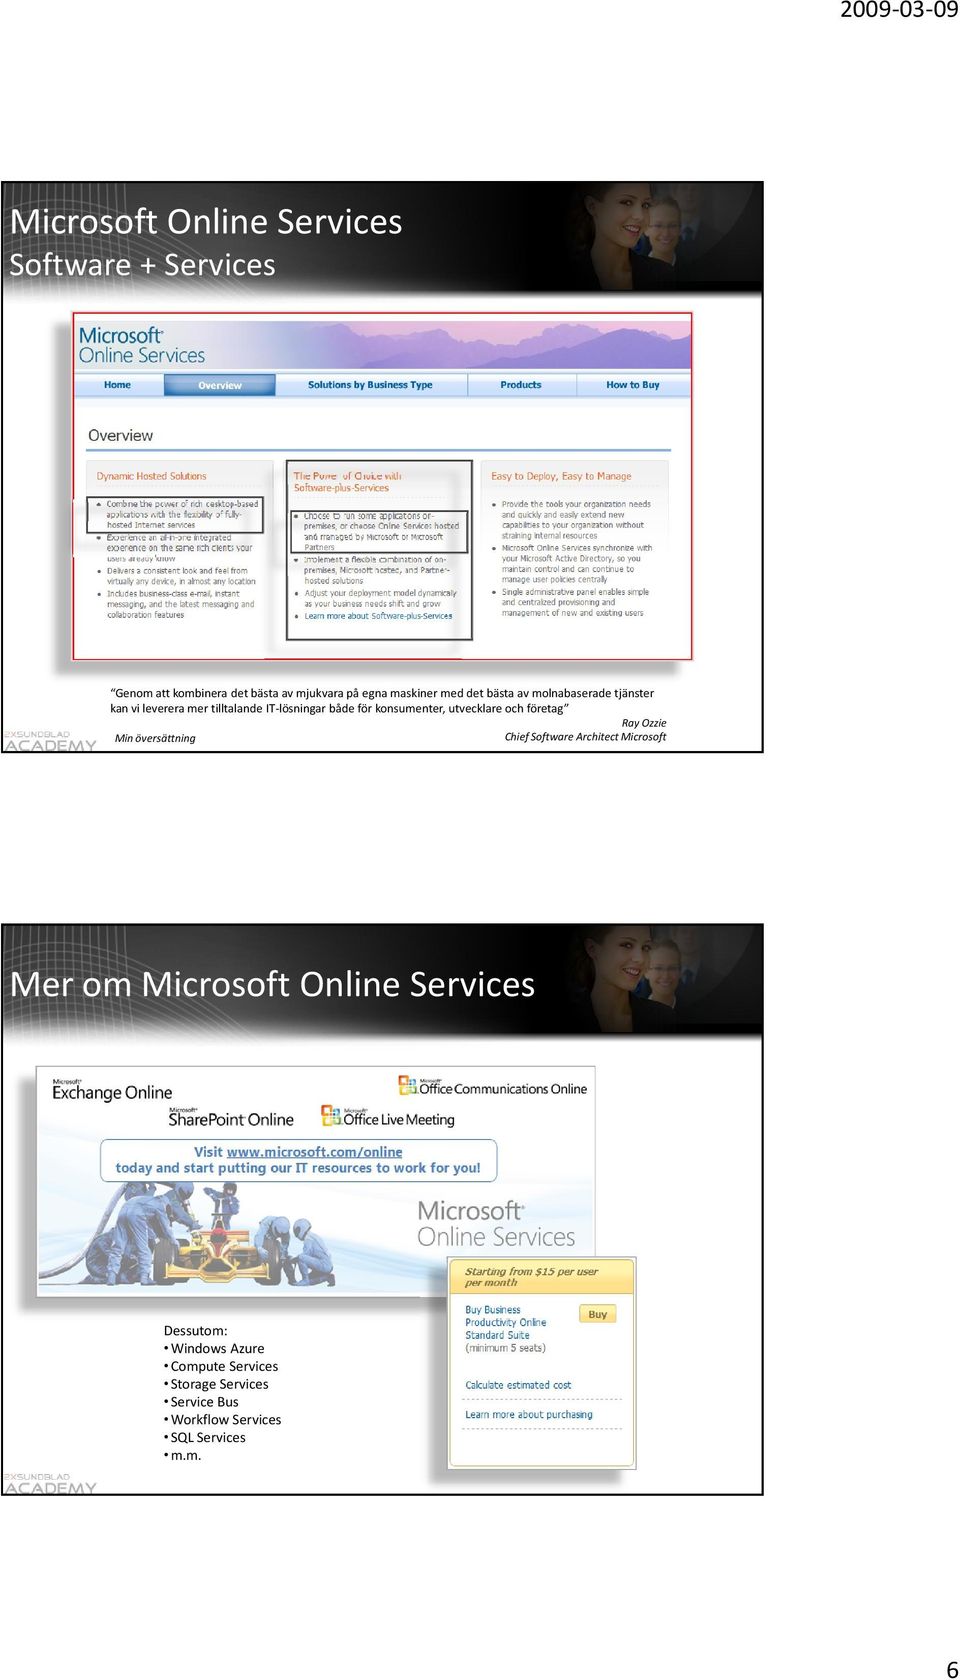 utvecklare och företag Min översättning Ray Ozzie Chief Software Architect Microsoft Mer om Microsoft Online